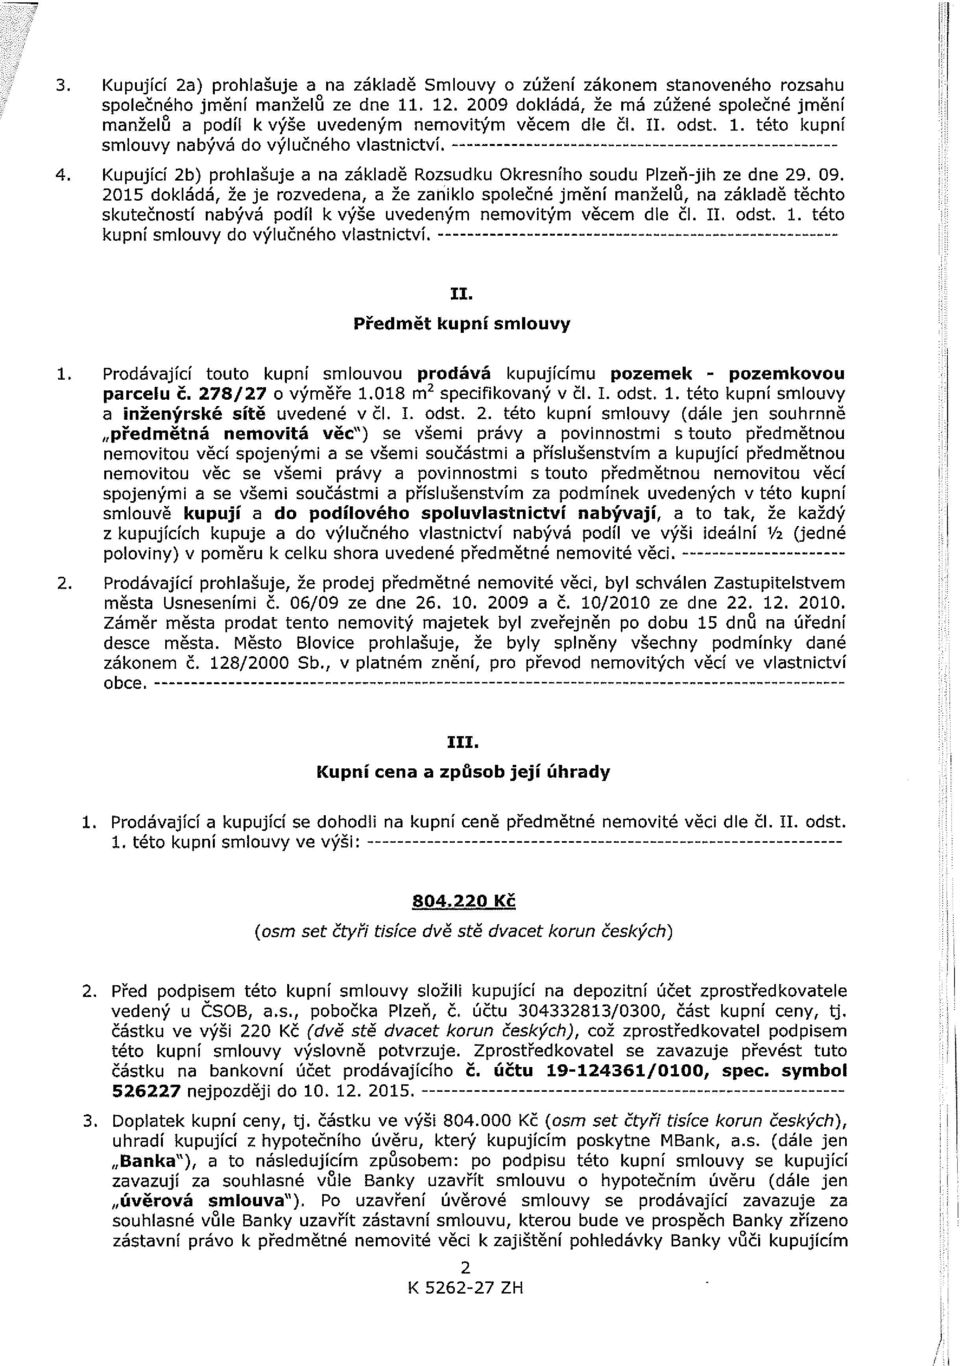 Kupující 2b) prohlašuje a na základě Rozsudku Okresního soudu Plzeň-jih ze dne 29. 09.